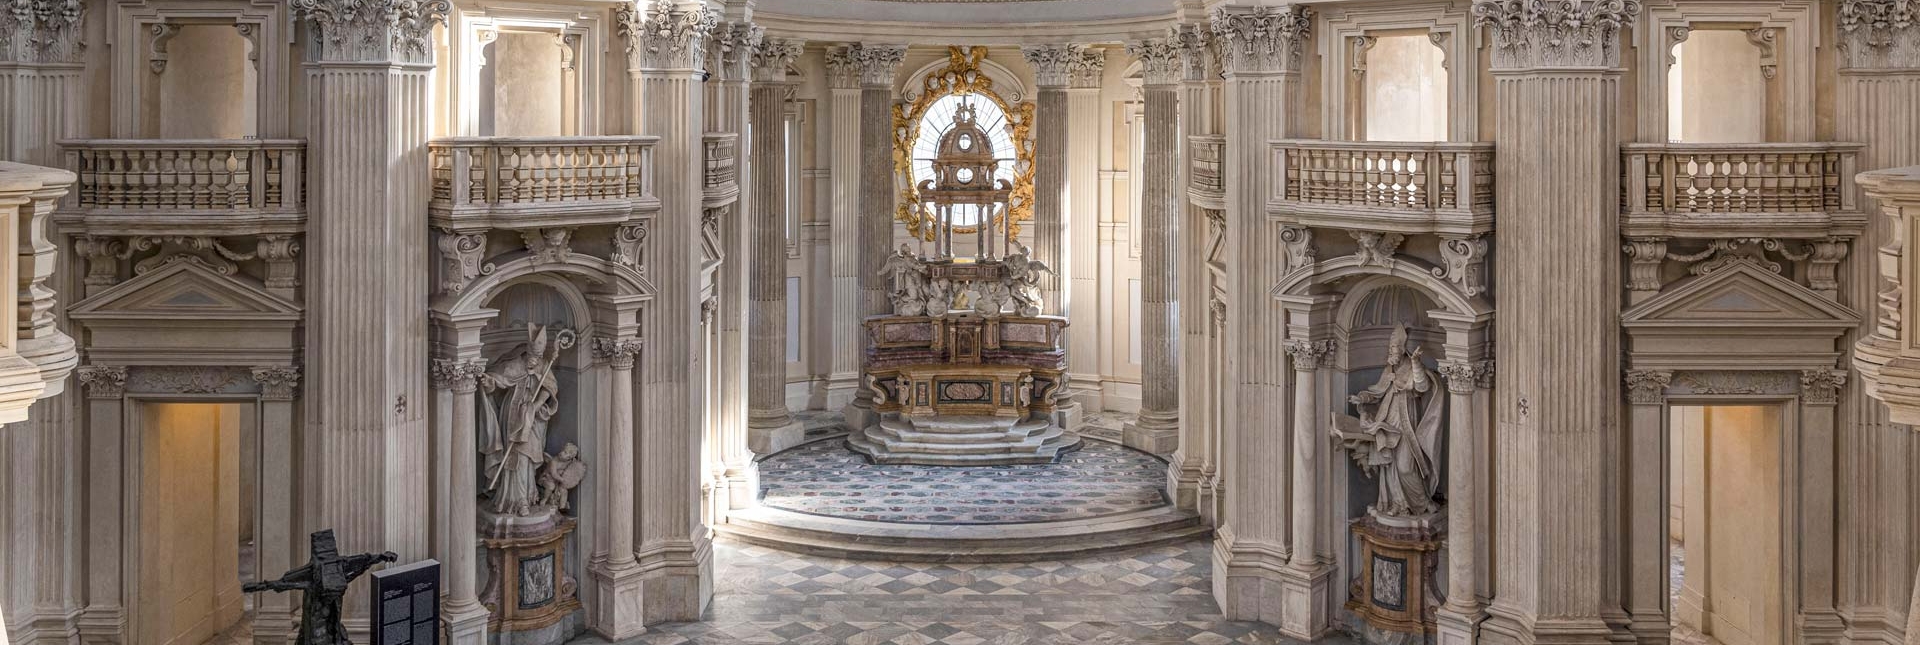 Cappella di Sant'Uberto - Ph. Daniele Ratti